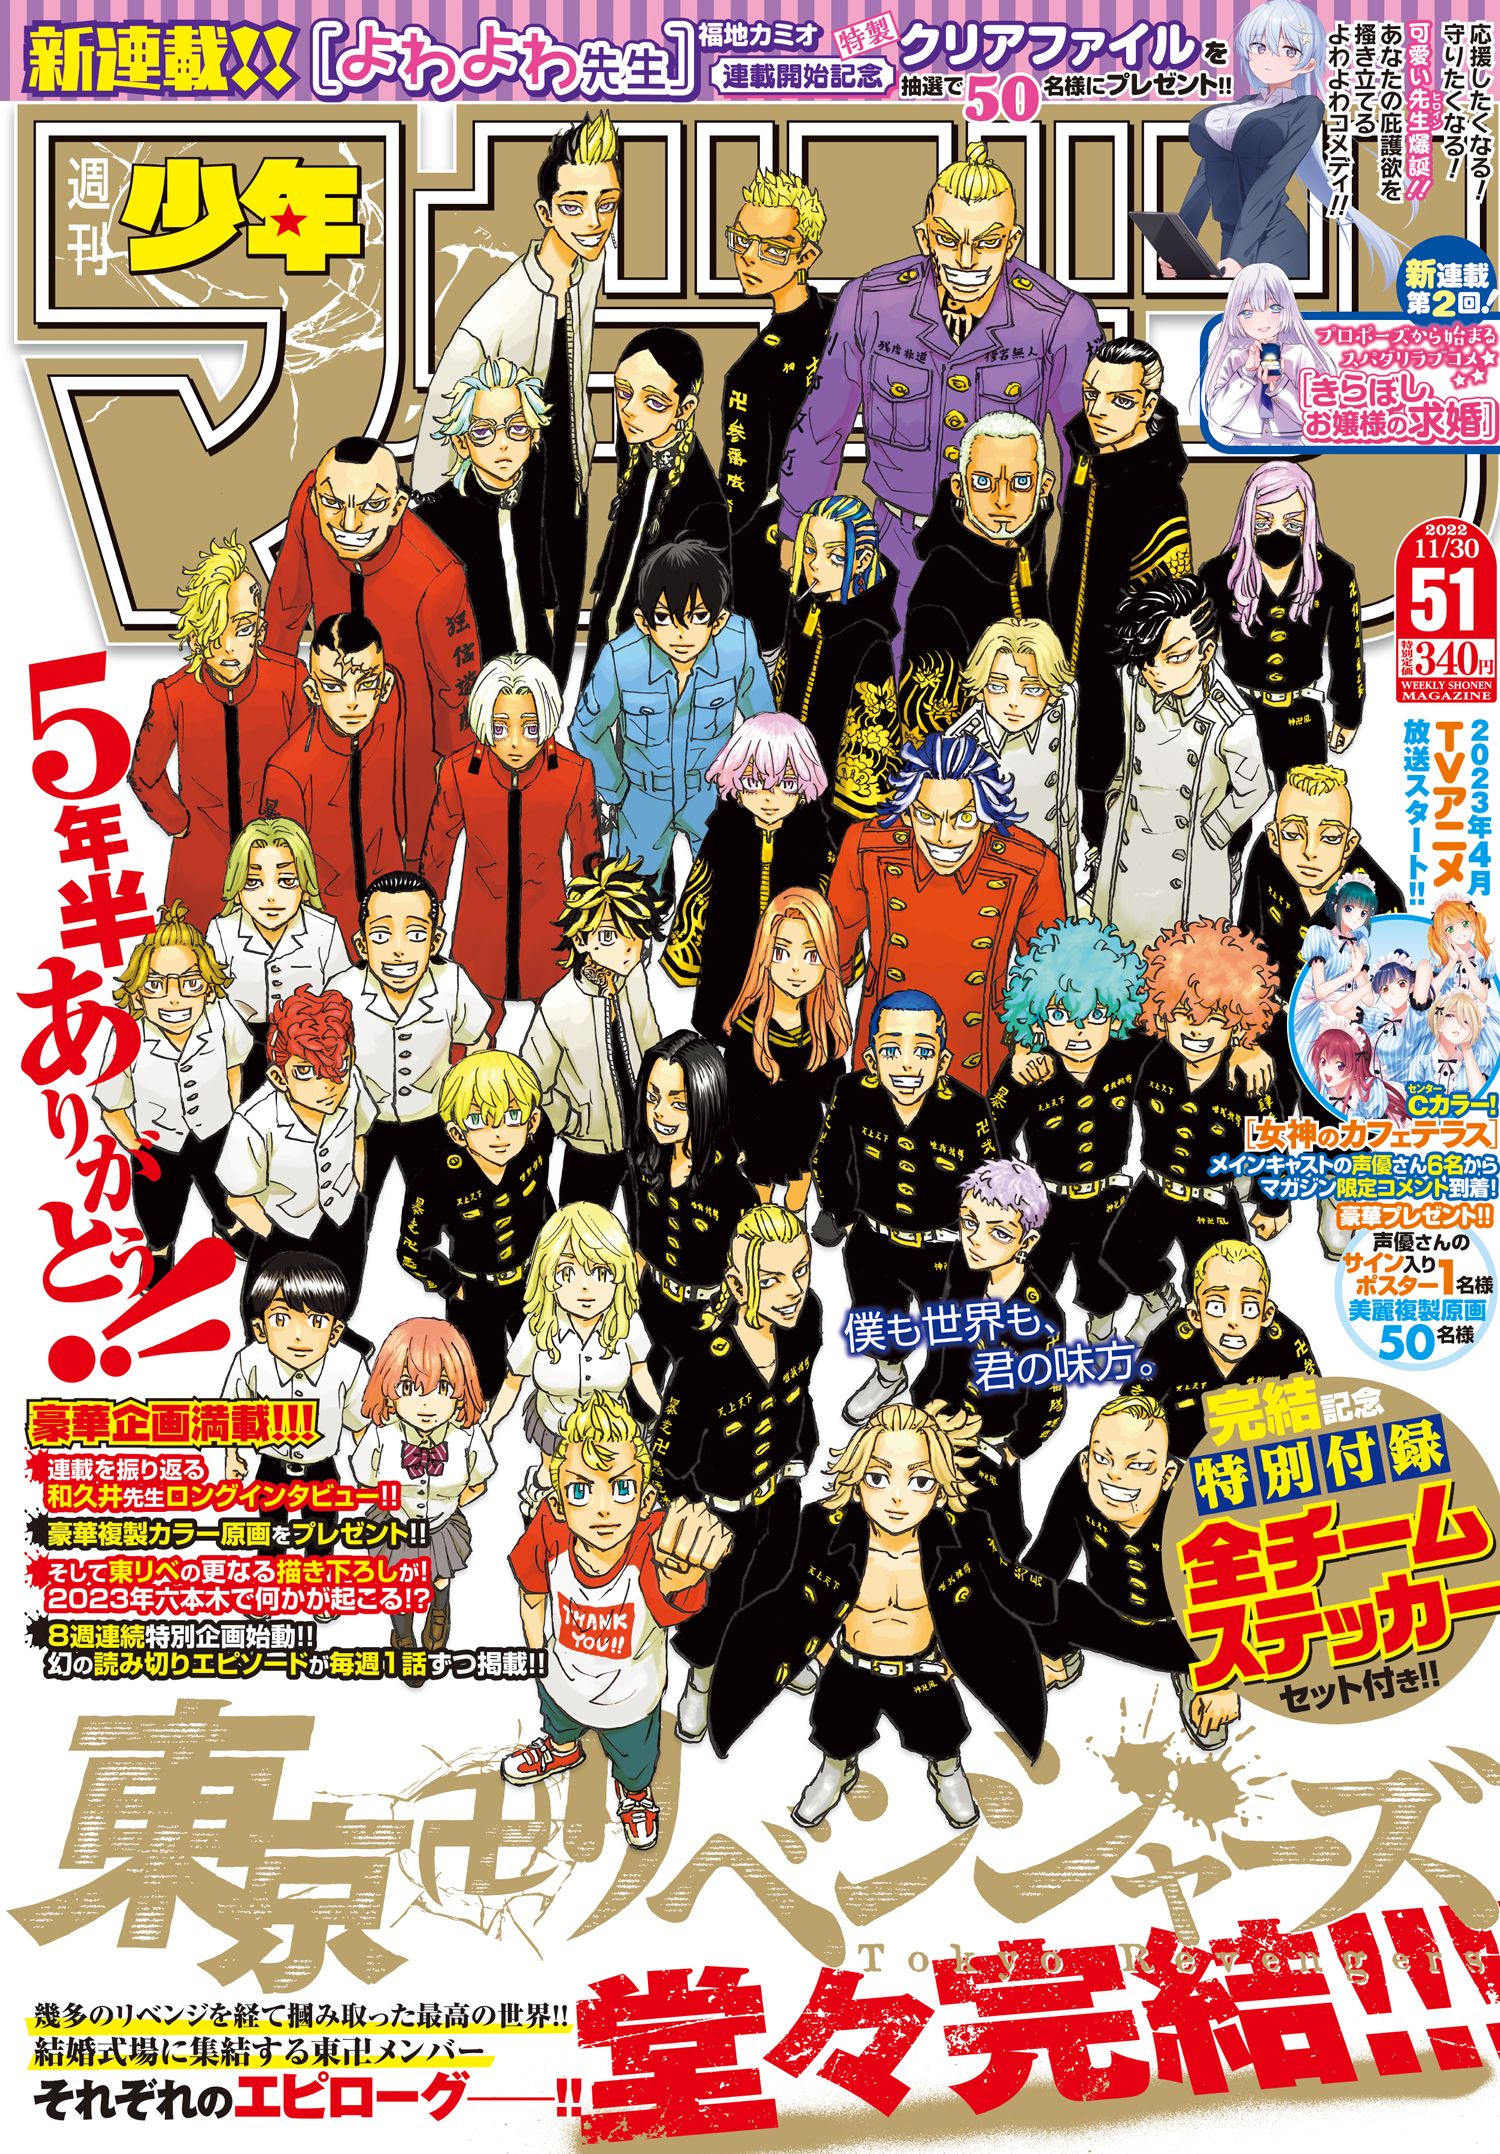 『東京卍リベンジャーズ』は週刊少年マガジンに連載された